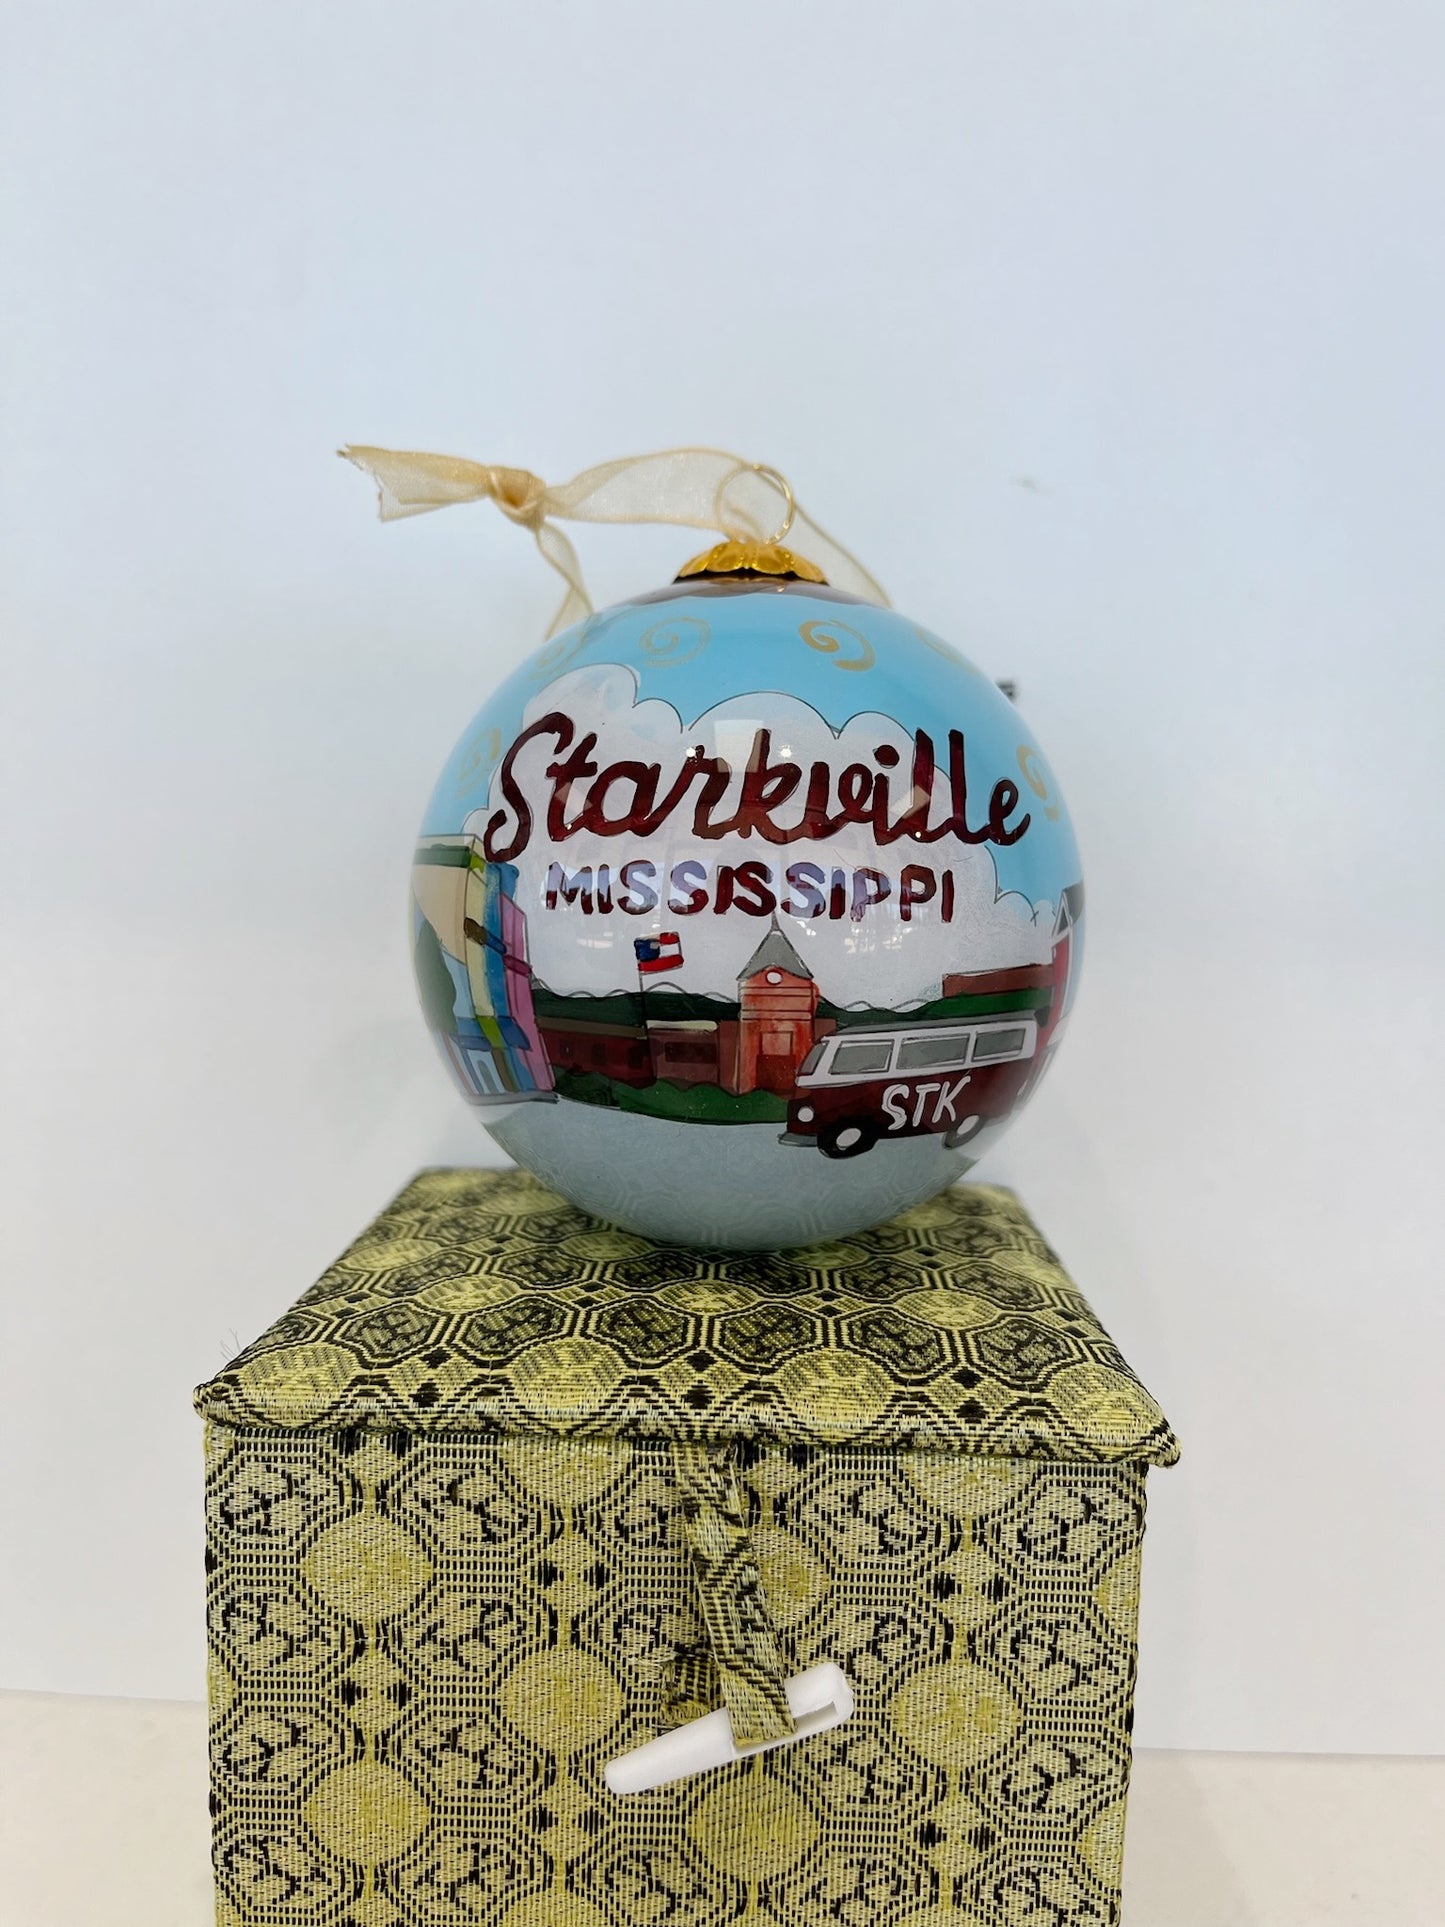 Starkville Street Ornament